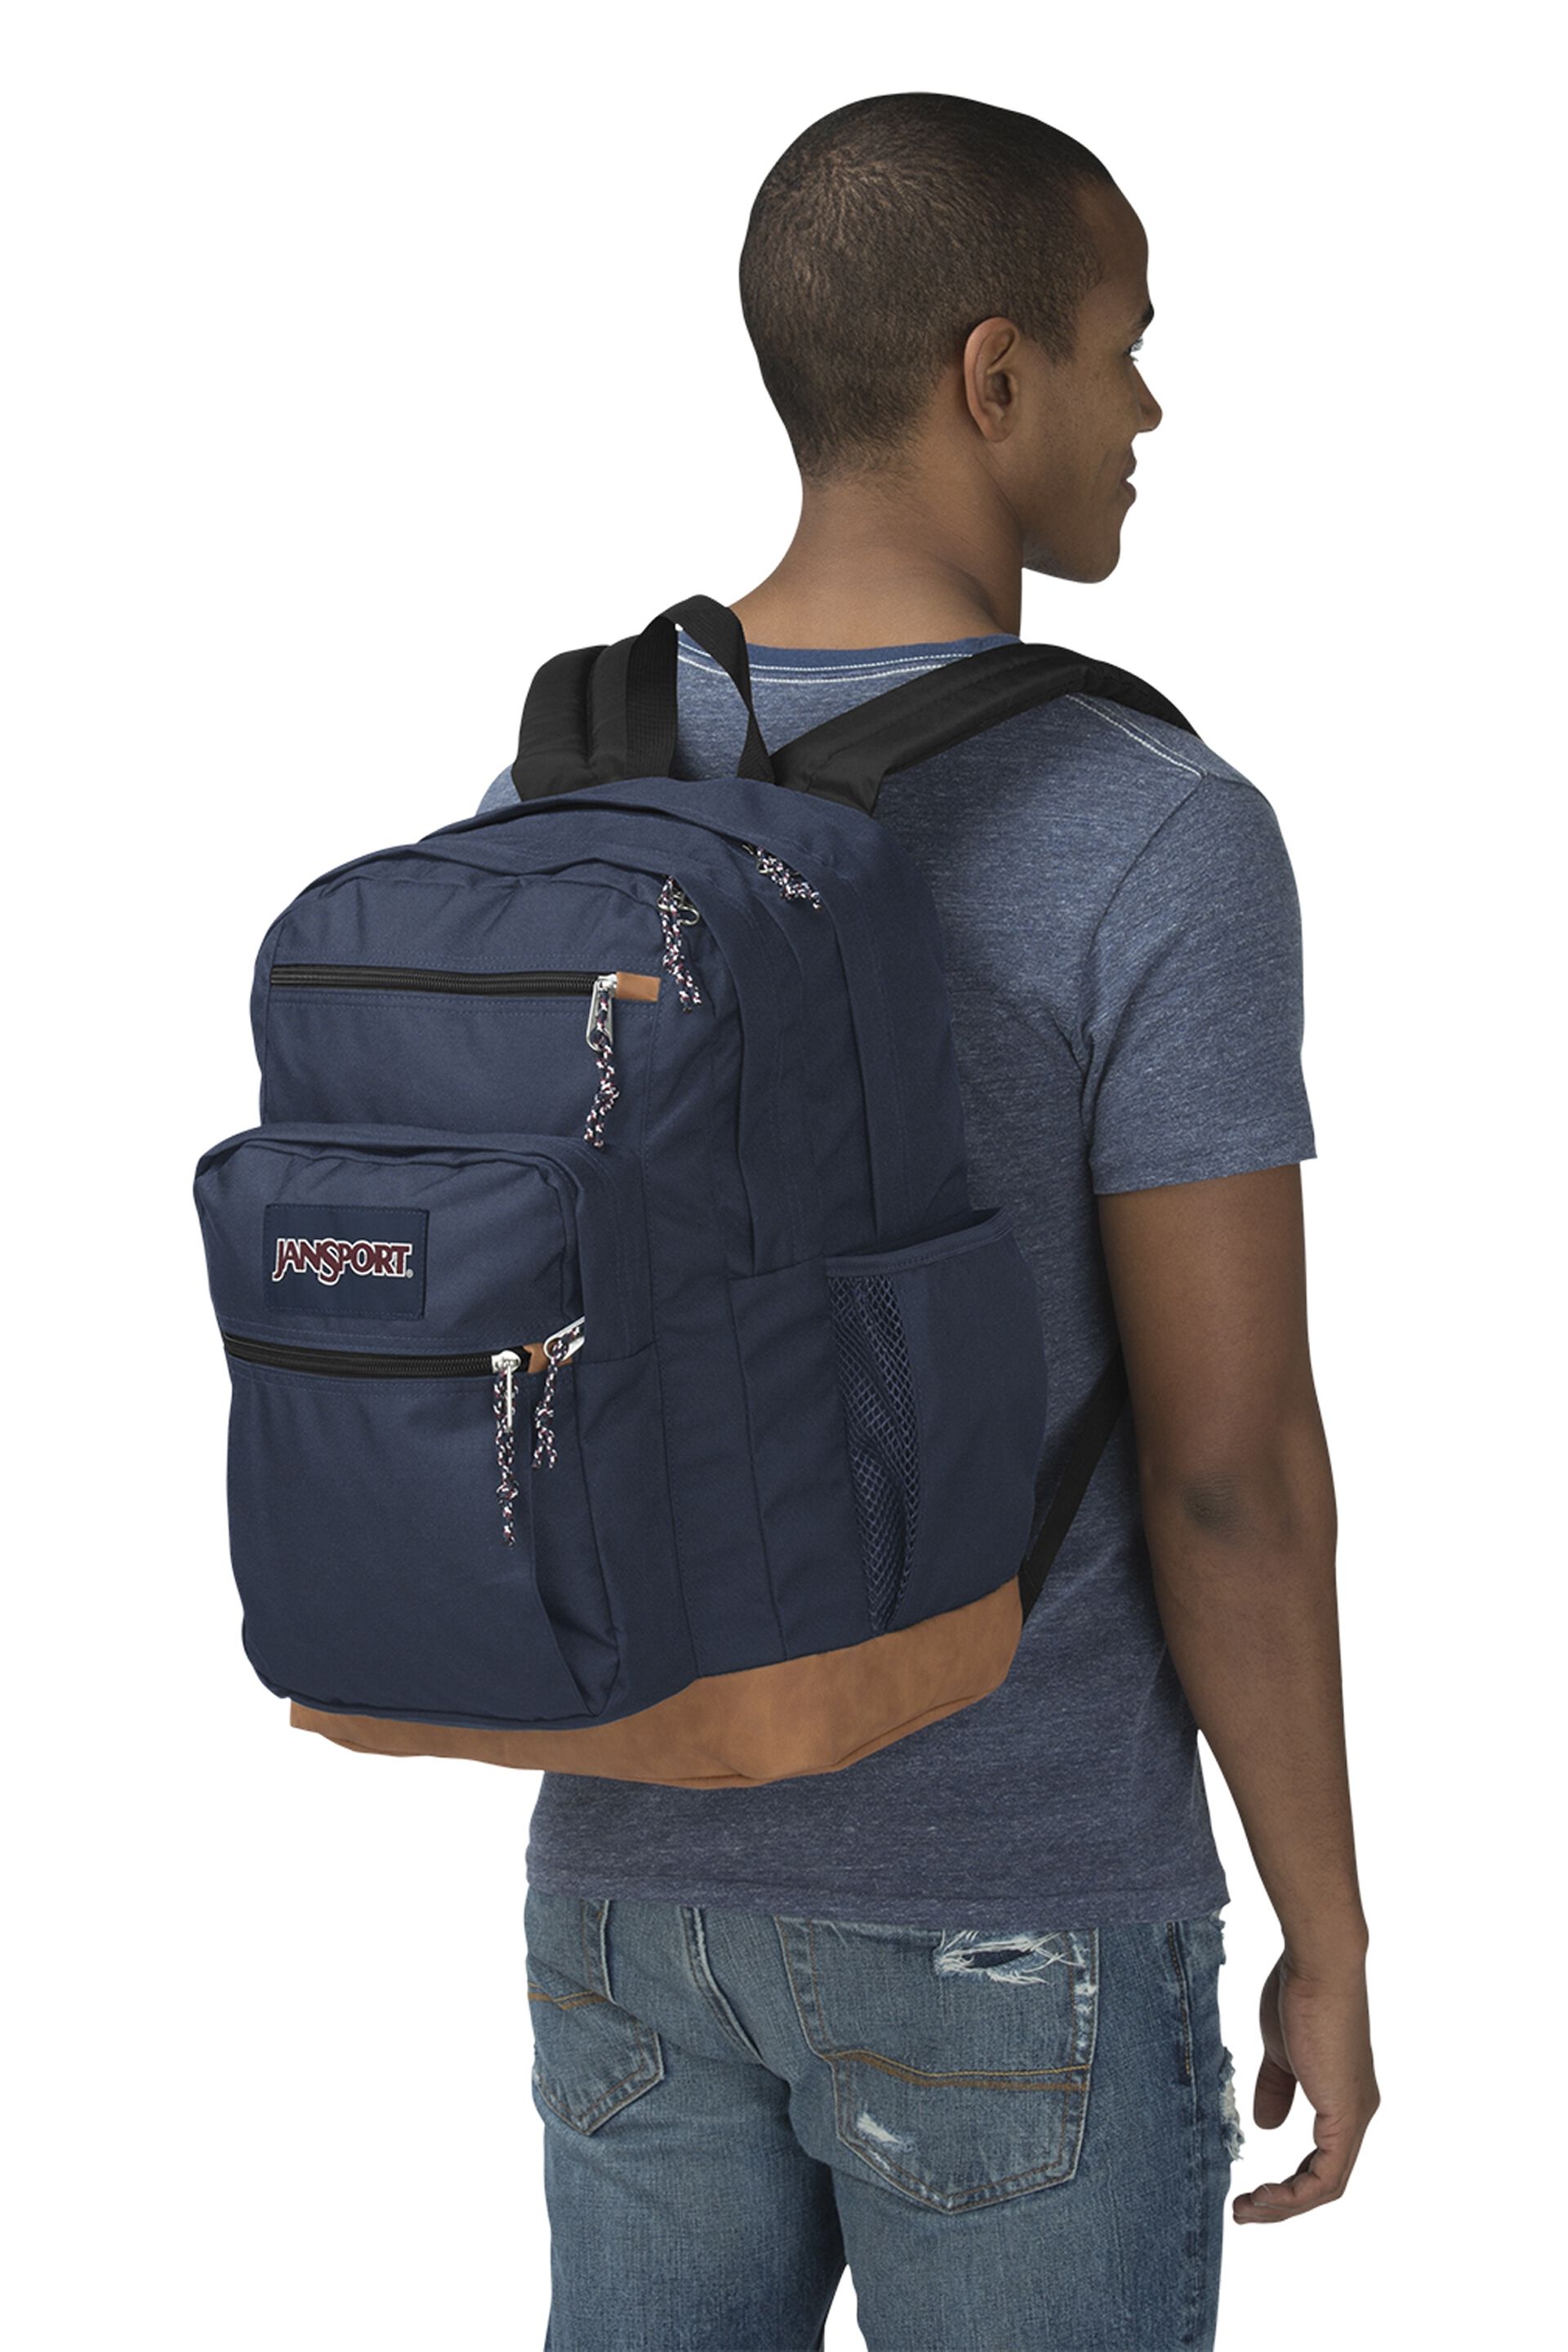 JanSport Cool Student Laptop Backpack Black 